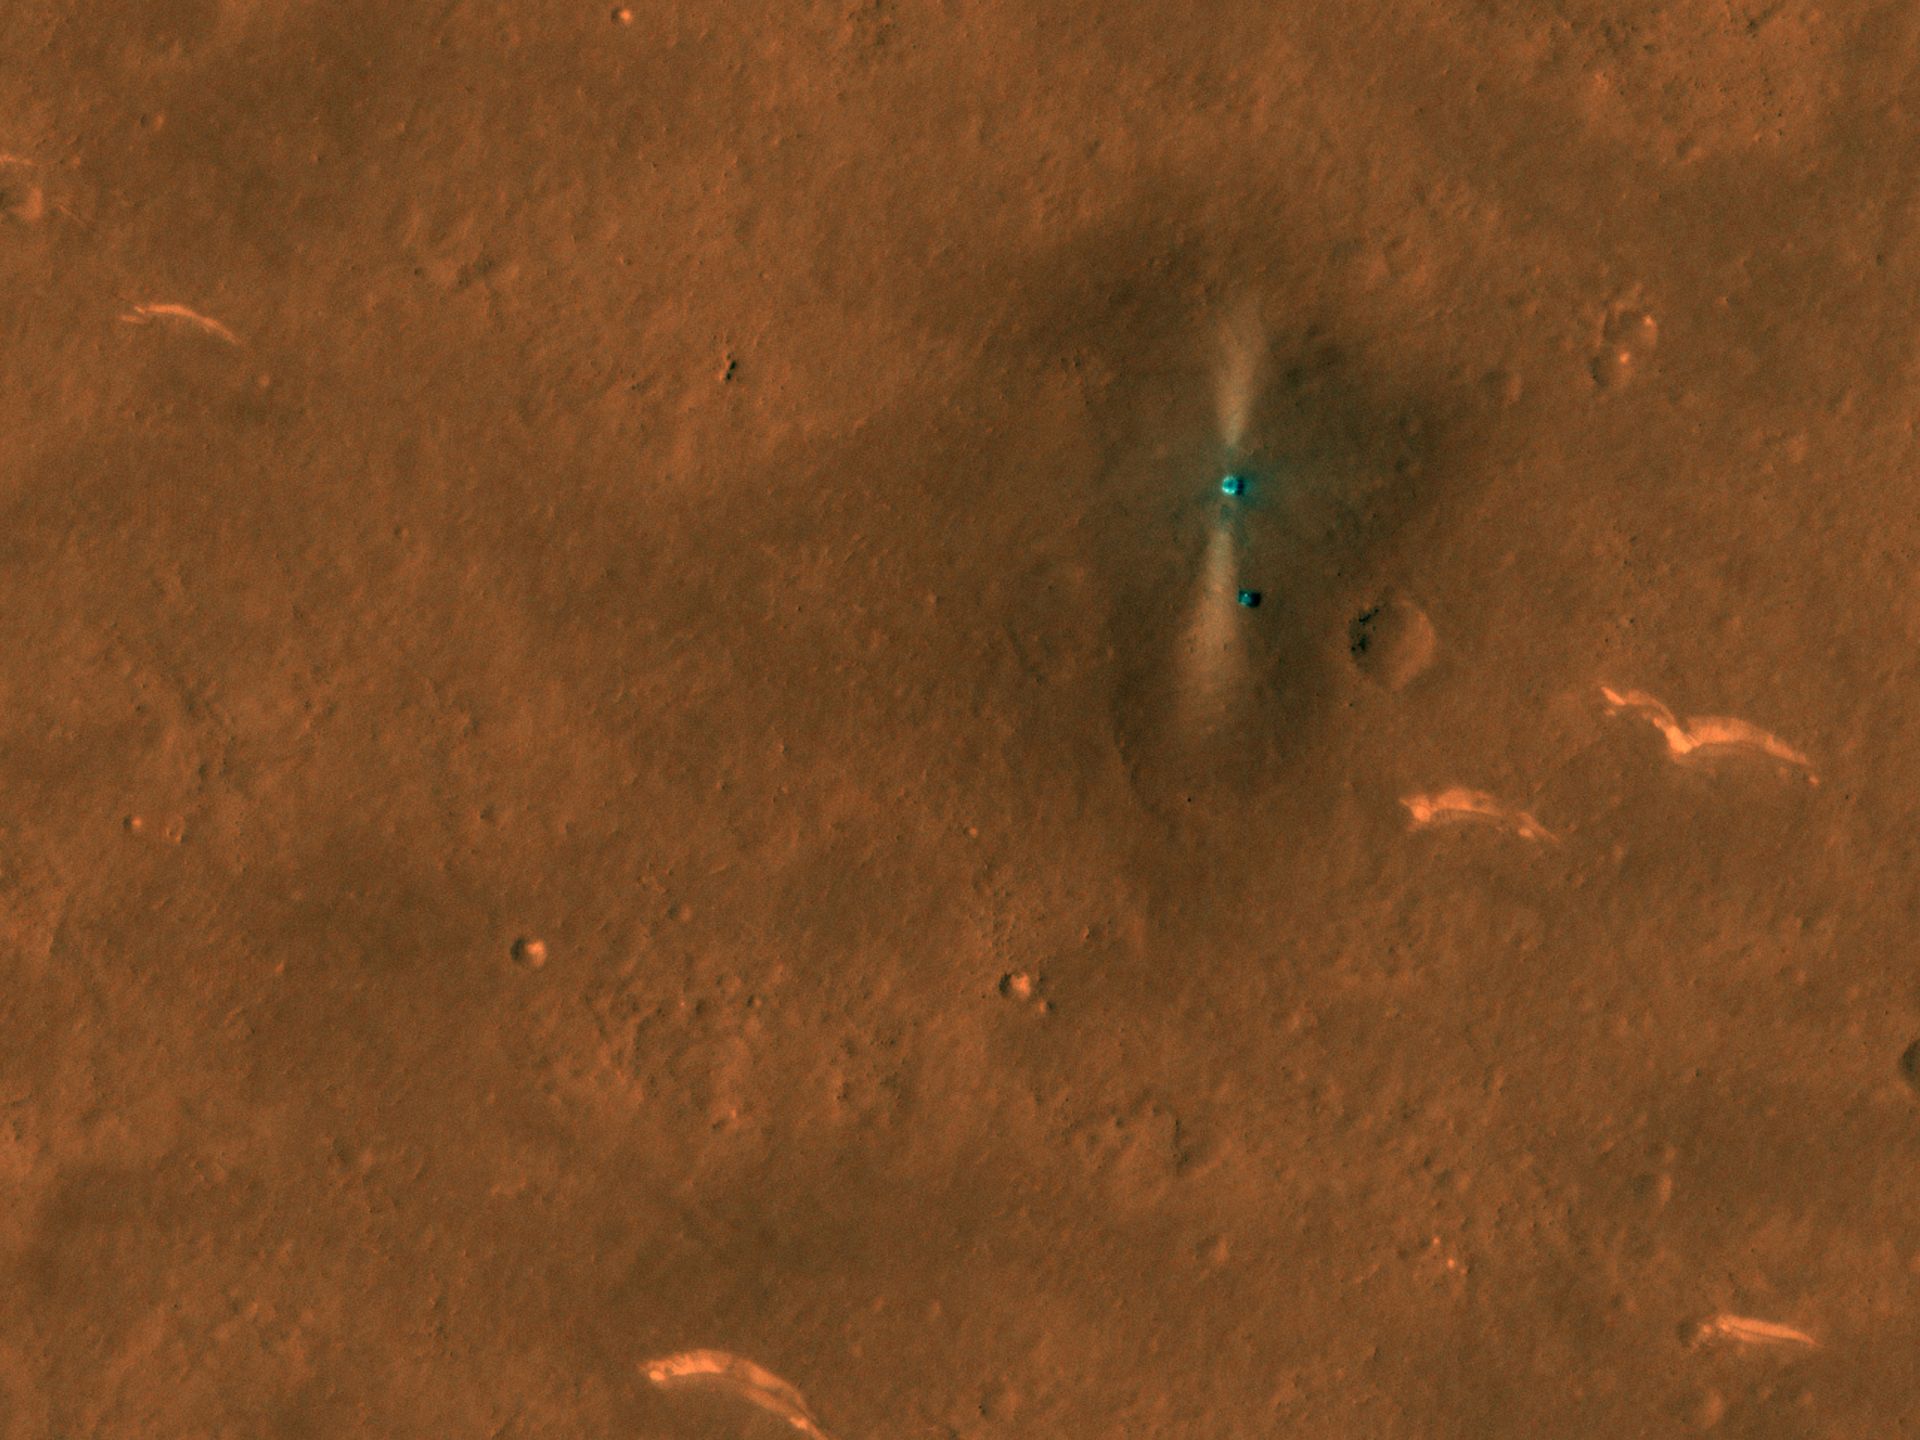 美国亚利桑那大学HiRISE相机团队日前公布了他们拍到的“祝融号”火星车的照片。